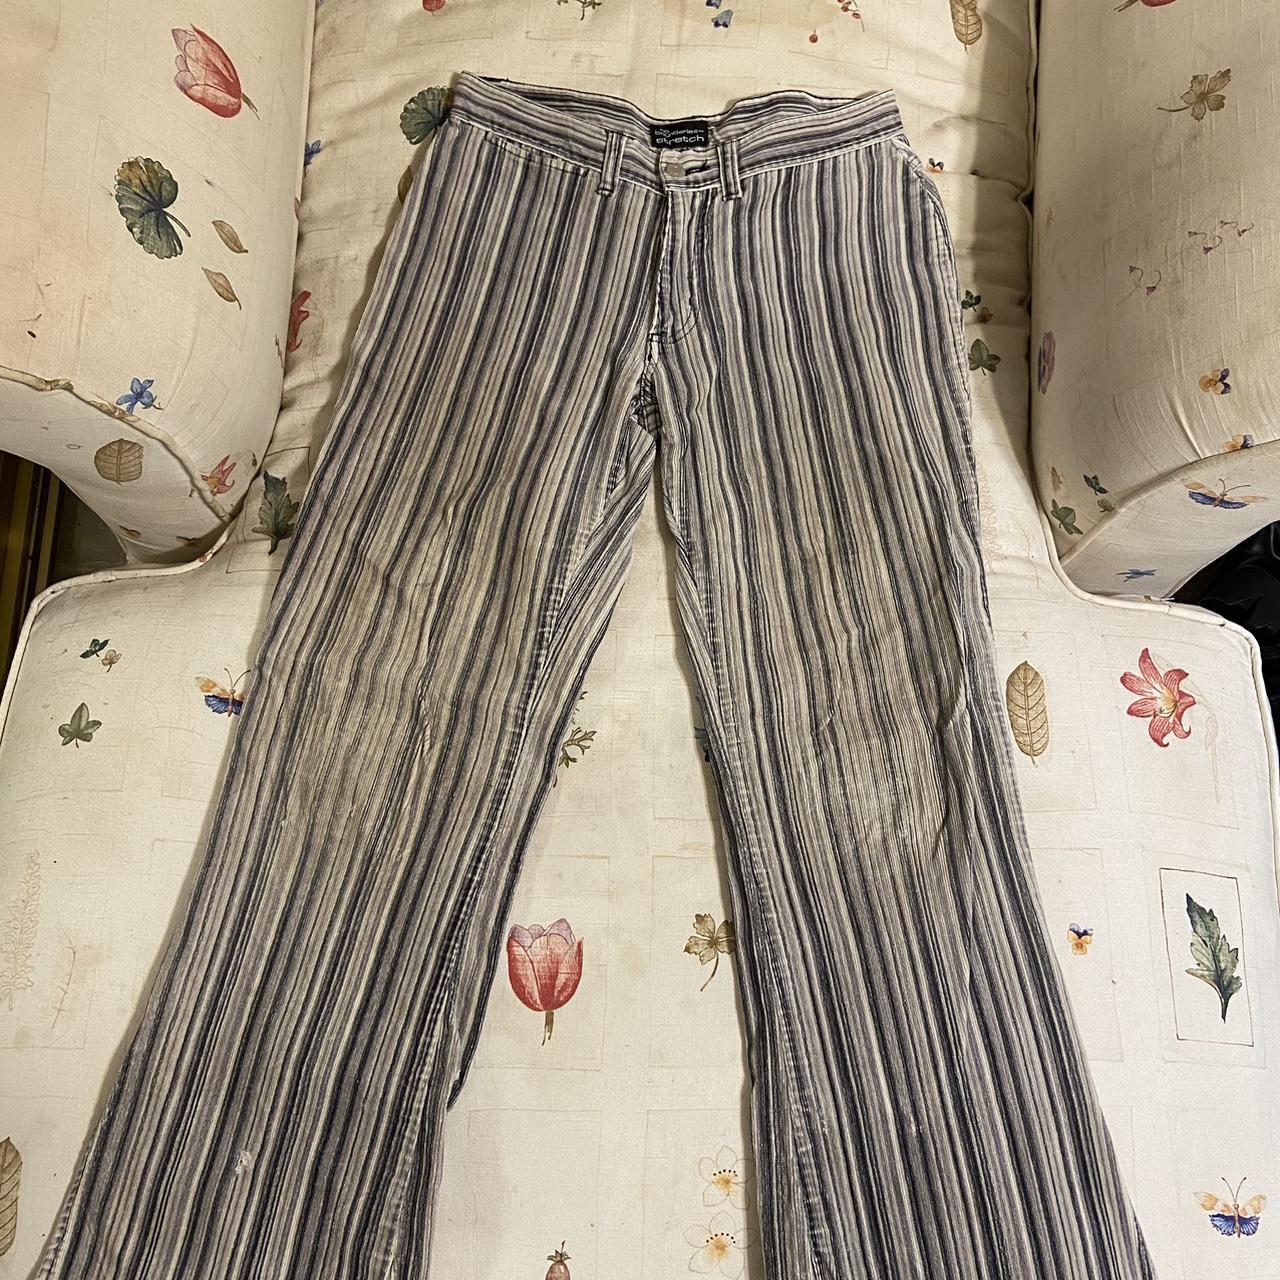 Vintage no boundaries flared striped pants with slit... - Depop